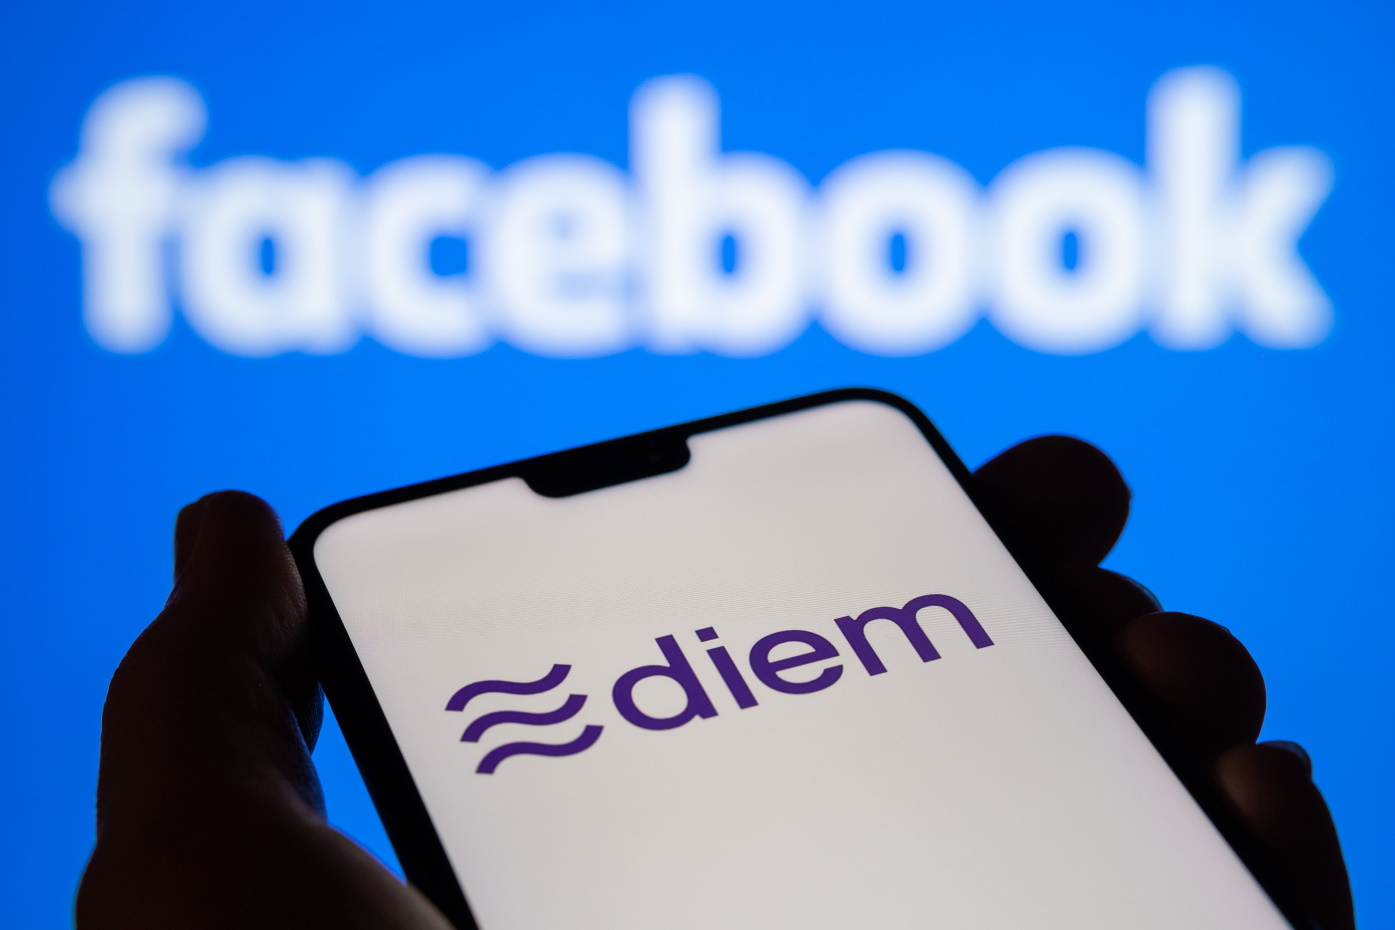 Facebook abandonne son projet controversé de stablecoin Diem (ex-Libra)... pour mieux lancer discrètement une crypto dans son metaverse ?